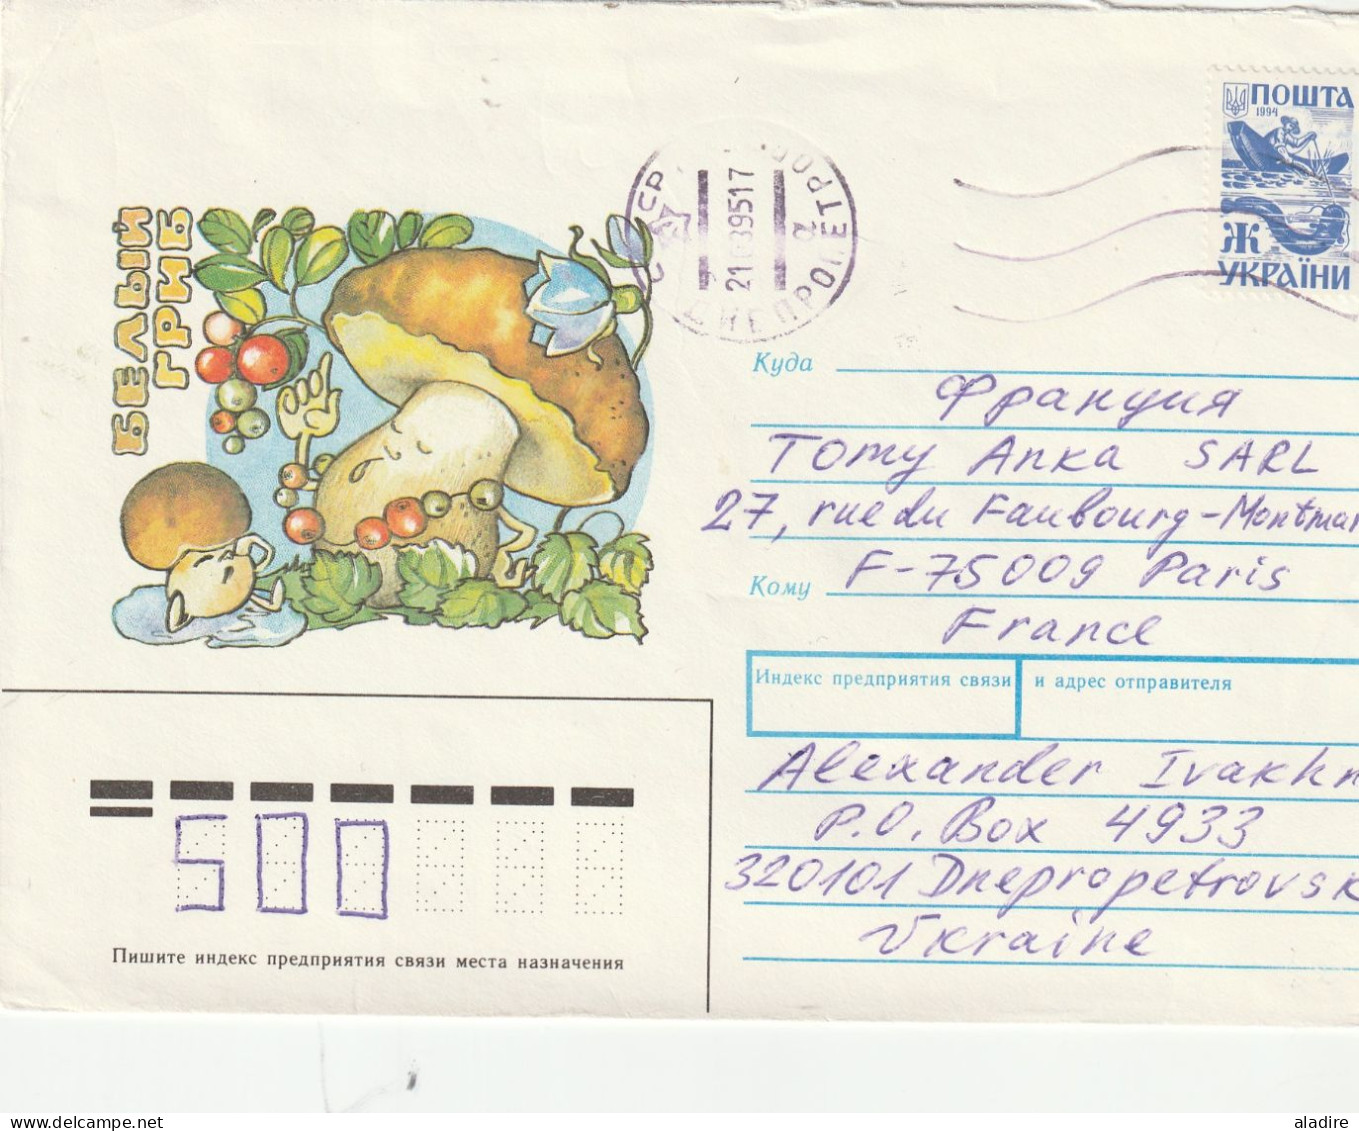 1811 - 1991 Україна UKRAINE - lot de 7 lettres, enveloppes et entiers  - 14 scans